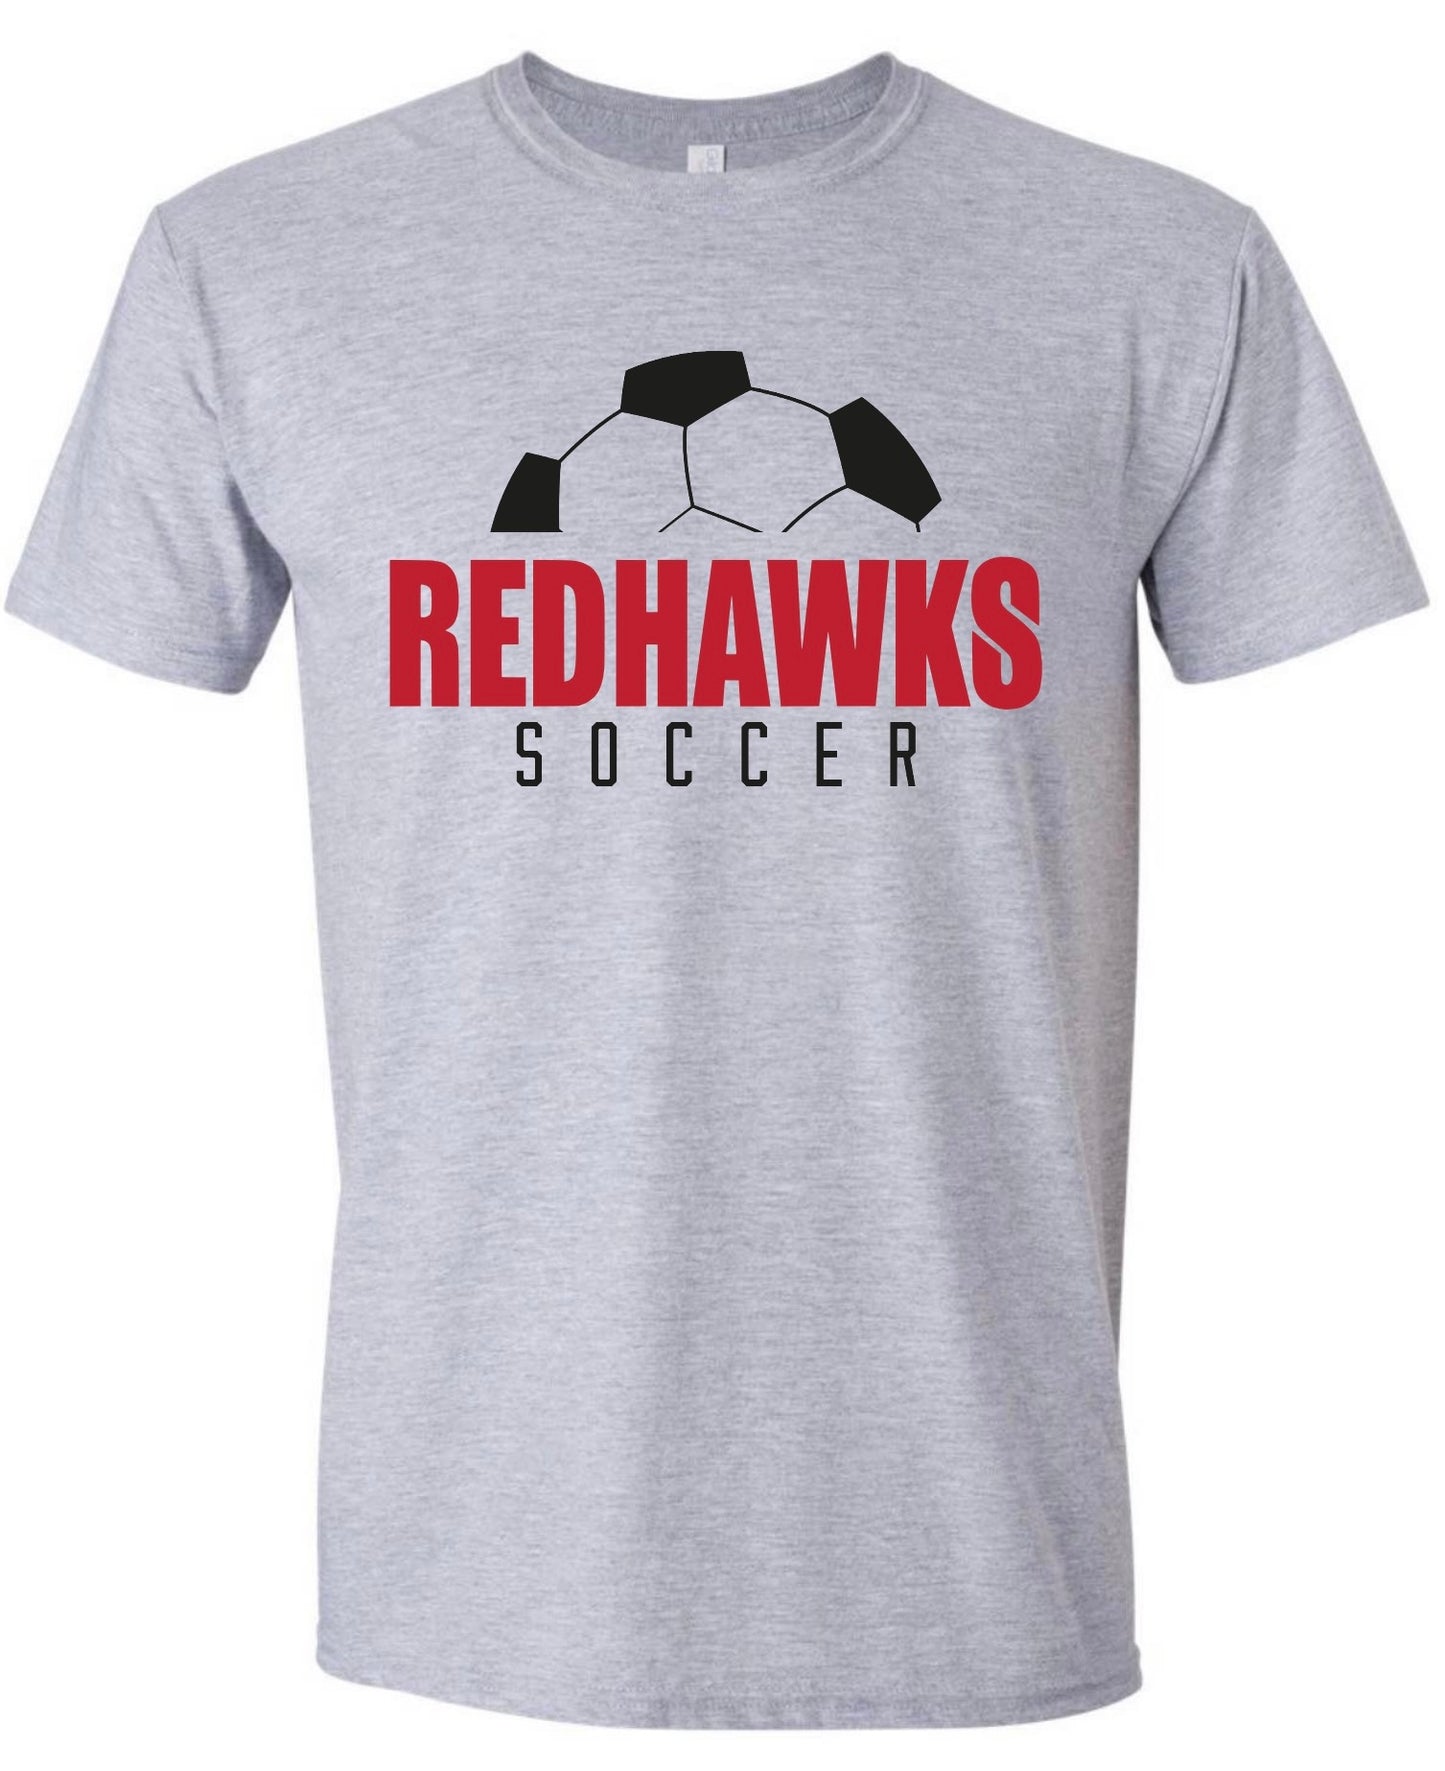 RedHawks Soccer Tshirt